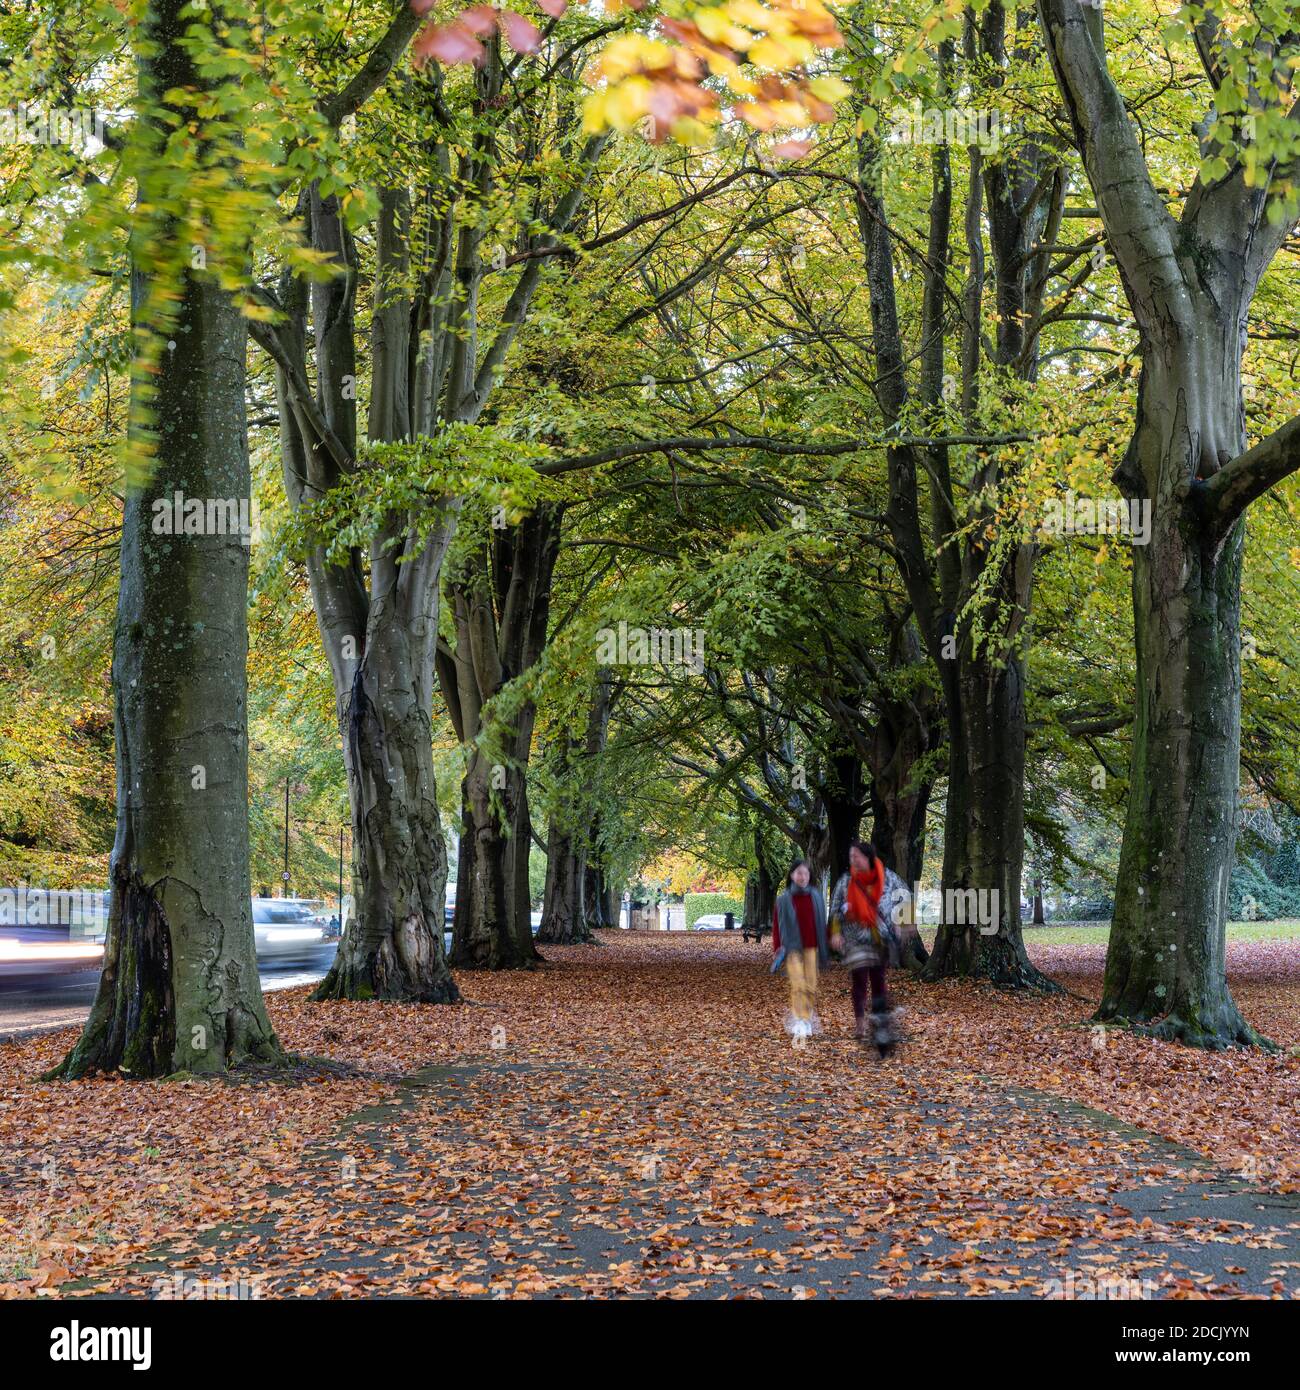 La gente camina a través de hojas caídas a lo largo de las avenidas de haya y roble del parque Clifton Down durante el otoño en Bristol, Inglaterra. Foto de stock